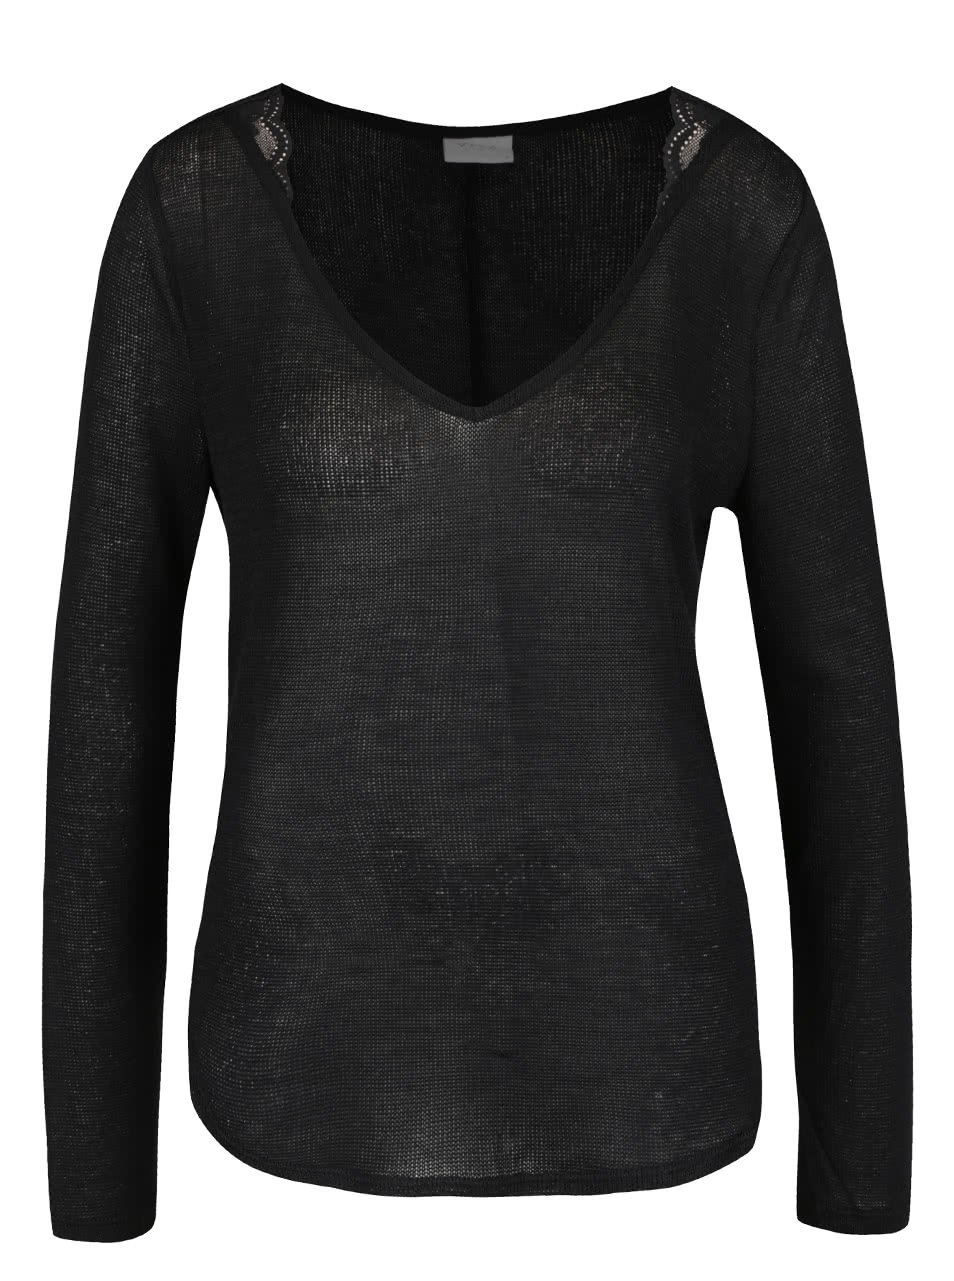 Černý volný průsvitný svetr s krajkovými detaily VILA Majsa